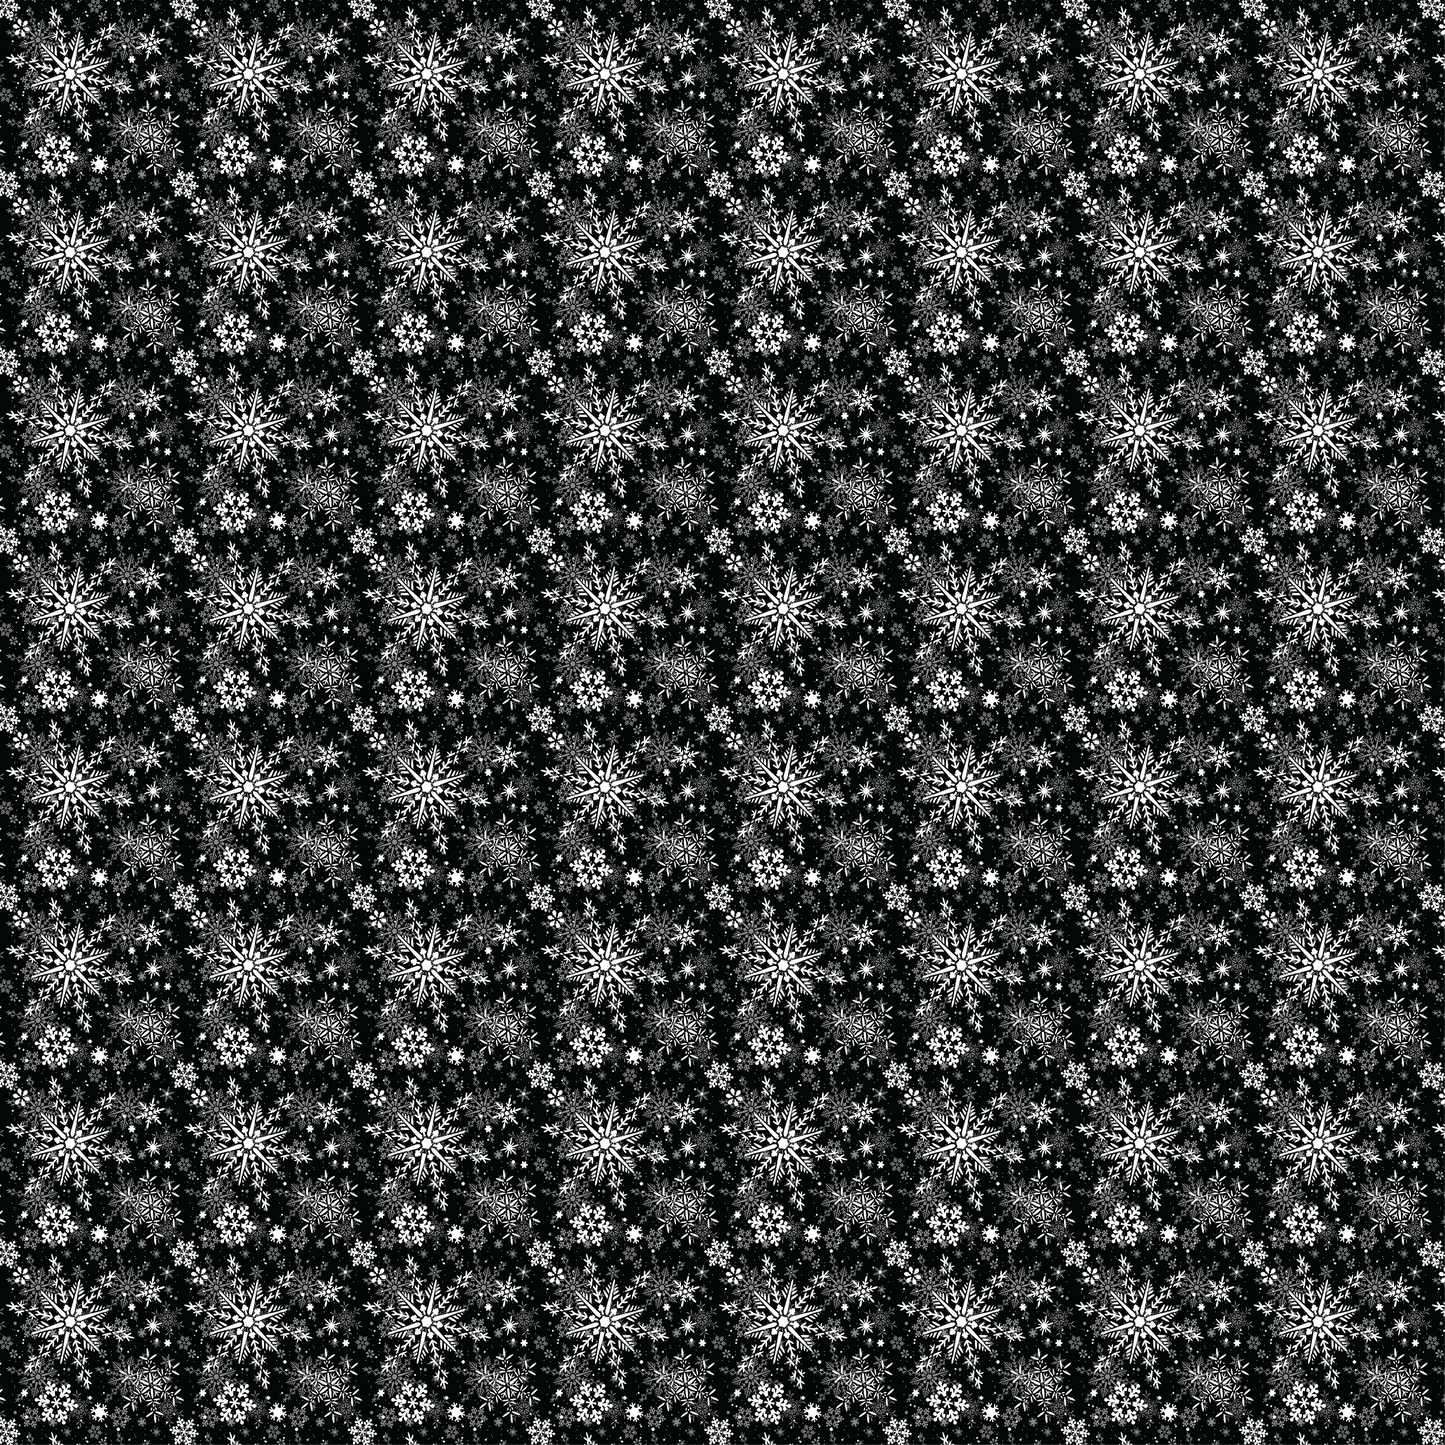 White Snowflakes on a Black Background 014